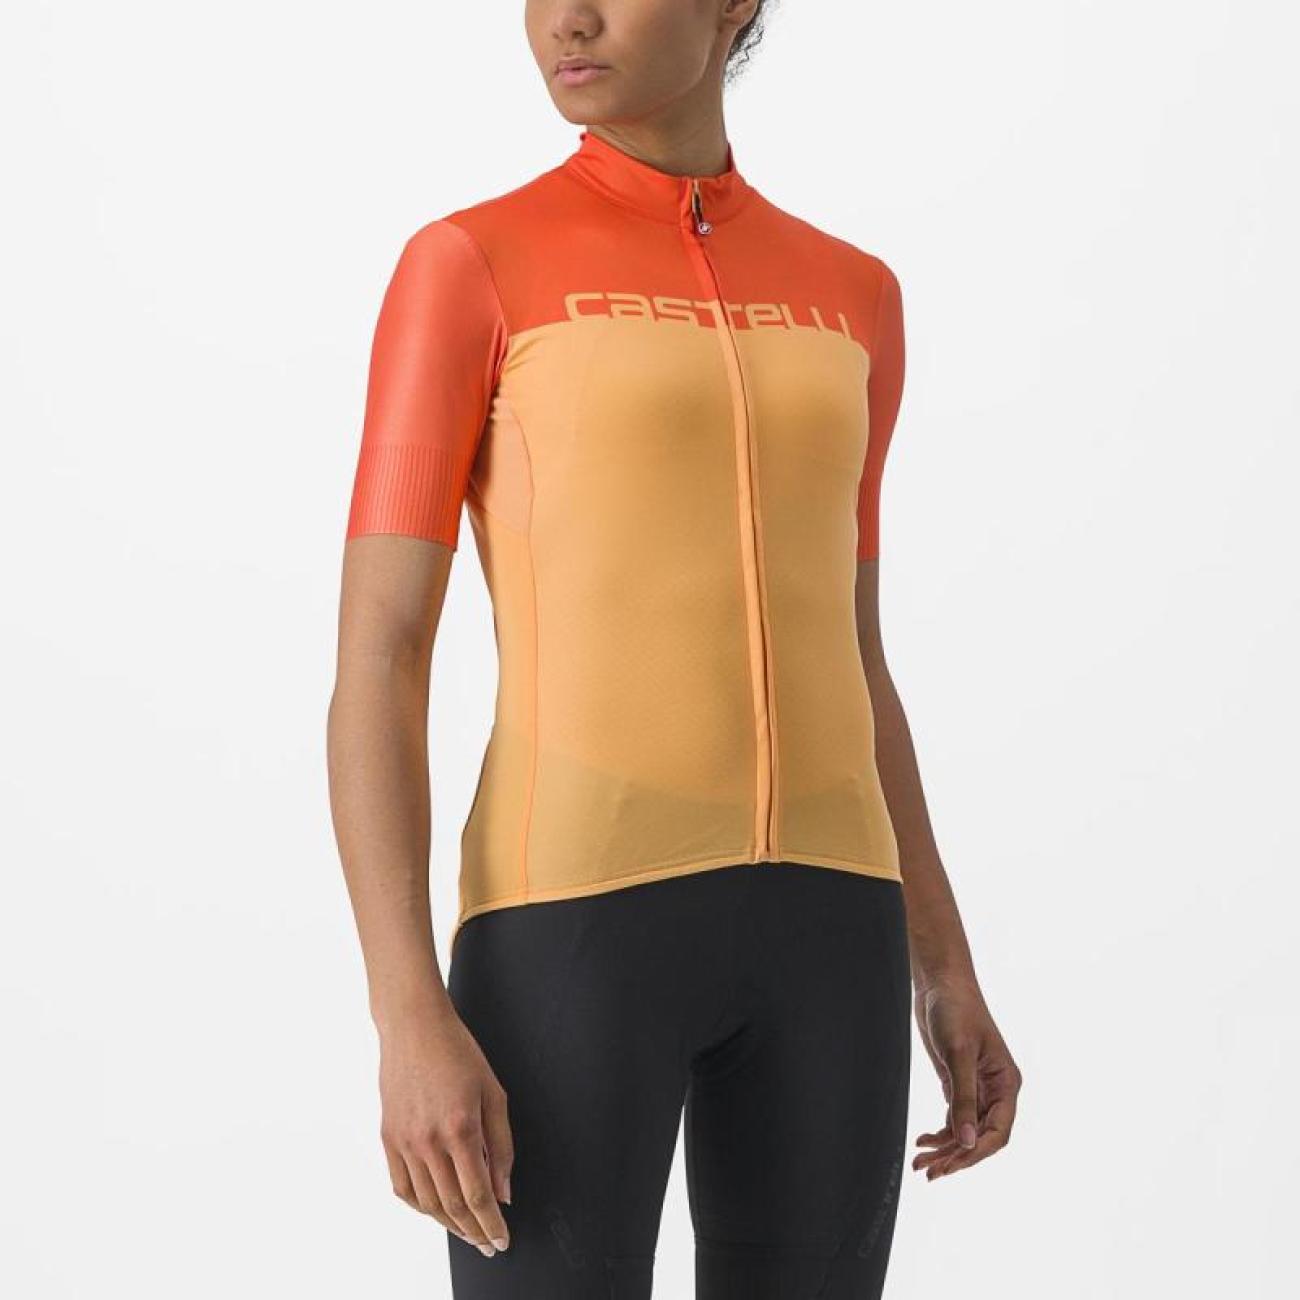 CASTELLI Cyklistický dres s krátkým rukávem - VELOCISSIMA - oranžová M